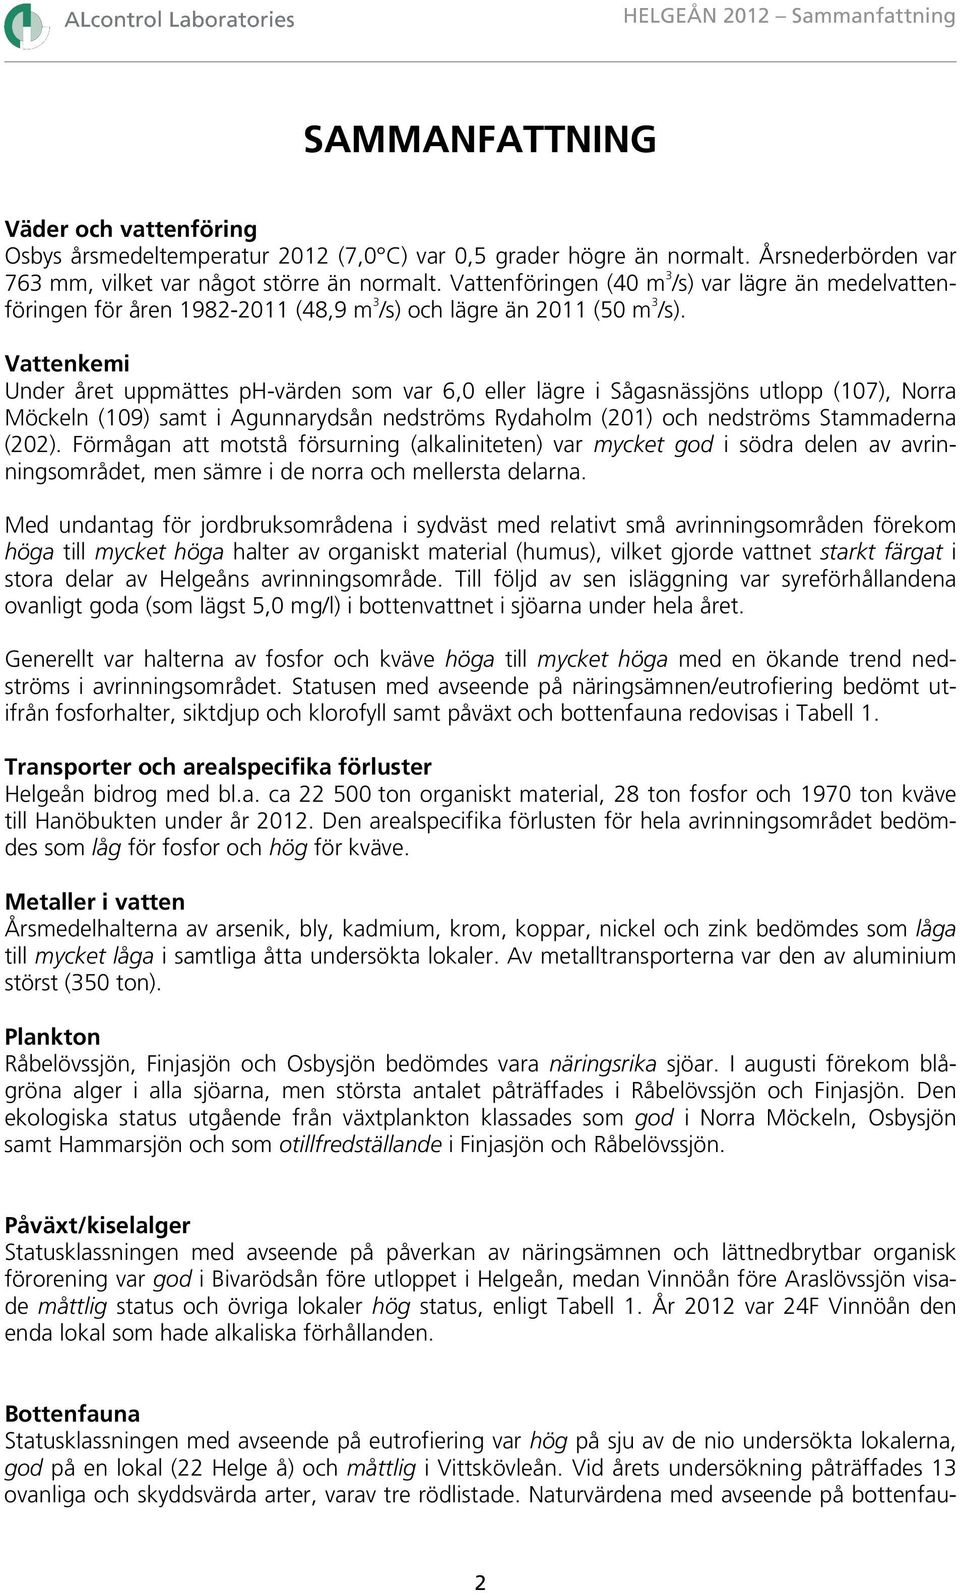 Vattenkemi Under året uppmättes ph-värden som var 6,0 eller lägre i Sågasnässjöns utlopp (107), Norra Möckeln (109) samt i Agunnarydsån nedströms Rydaholm (201) och nedströms Stammaderna (202).